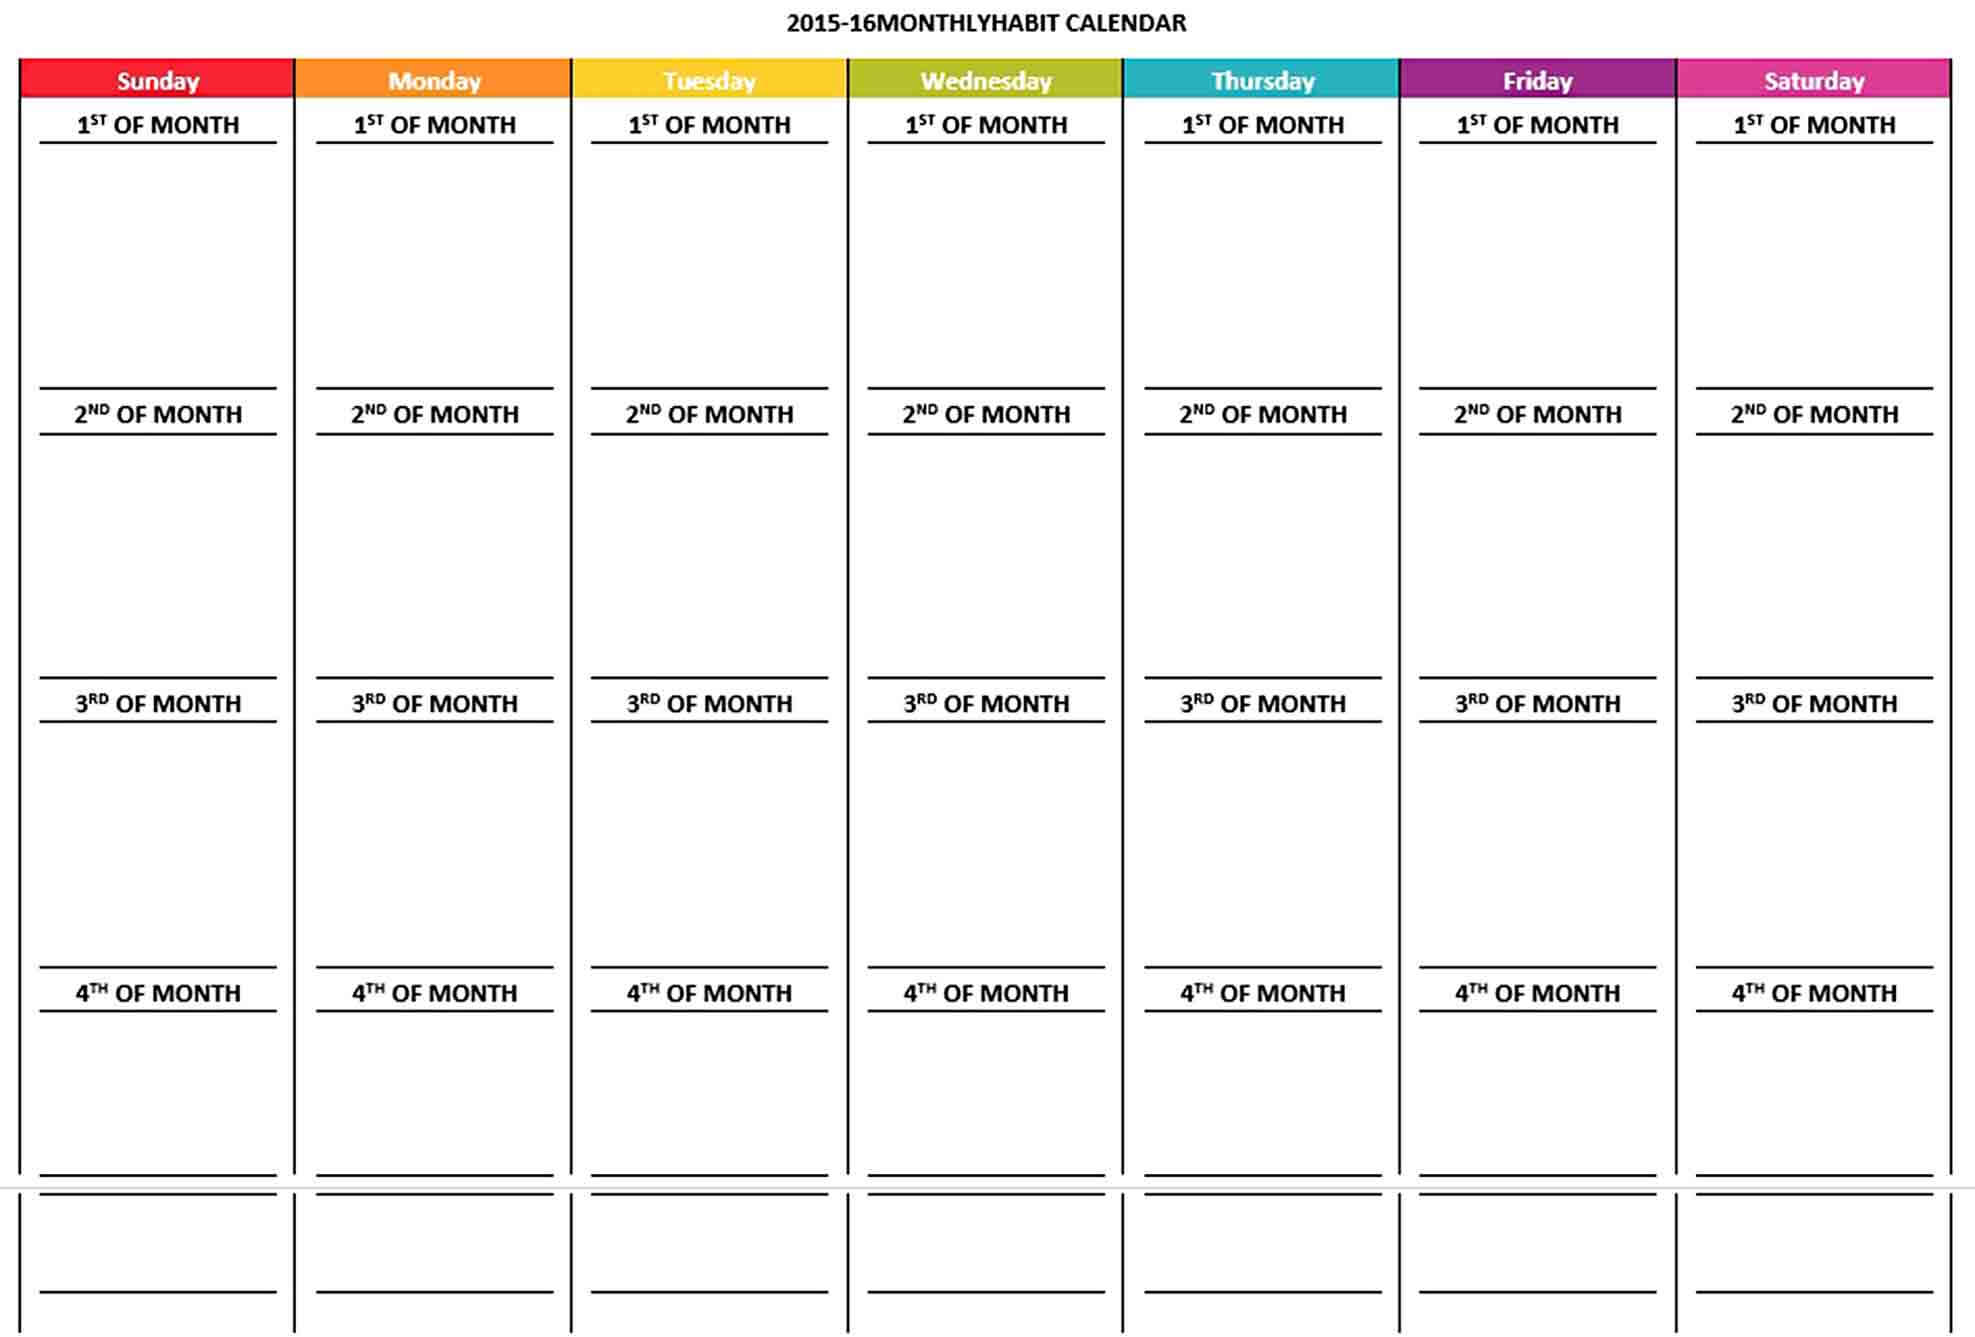 Monthly Habit Calendar Schedule Template